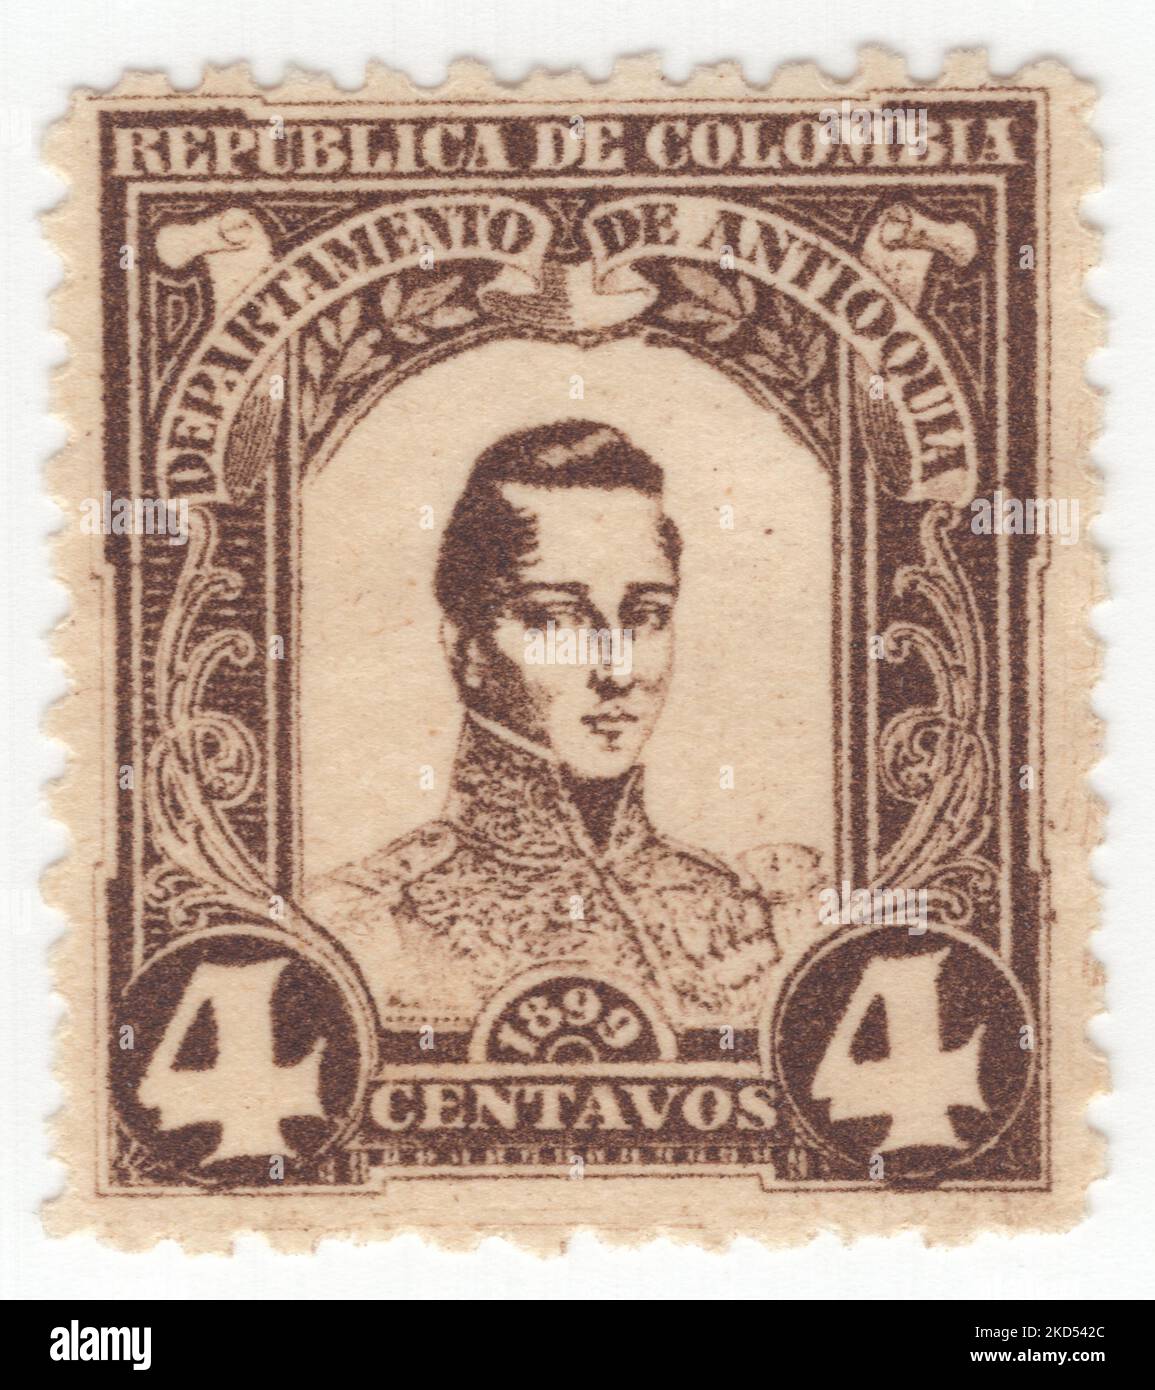 ANTIOQUIA - UM 1899: Eine 4 centavos bister-braune Briefmarke mit einem Porträt von General Jose Marıa Cordoba Muñoz, auch bekannt als der 'Held von Ayacucho', war ein General der kolumbianischen Armee während des Unabhängigkeitskrieges von Kolumbien, Peru und Bolivien aus Spanien Stockfoto